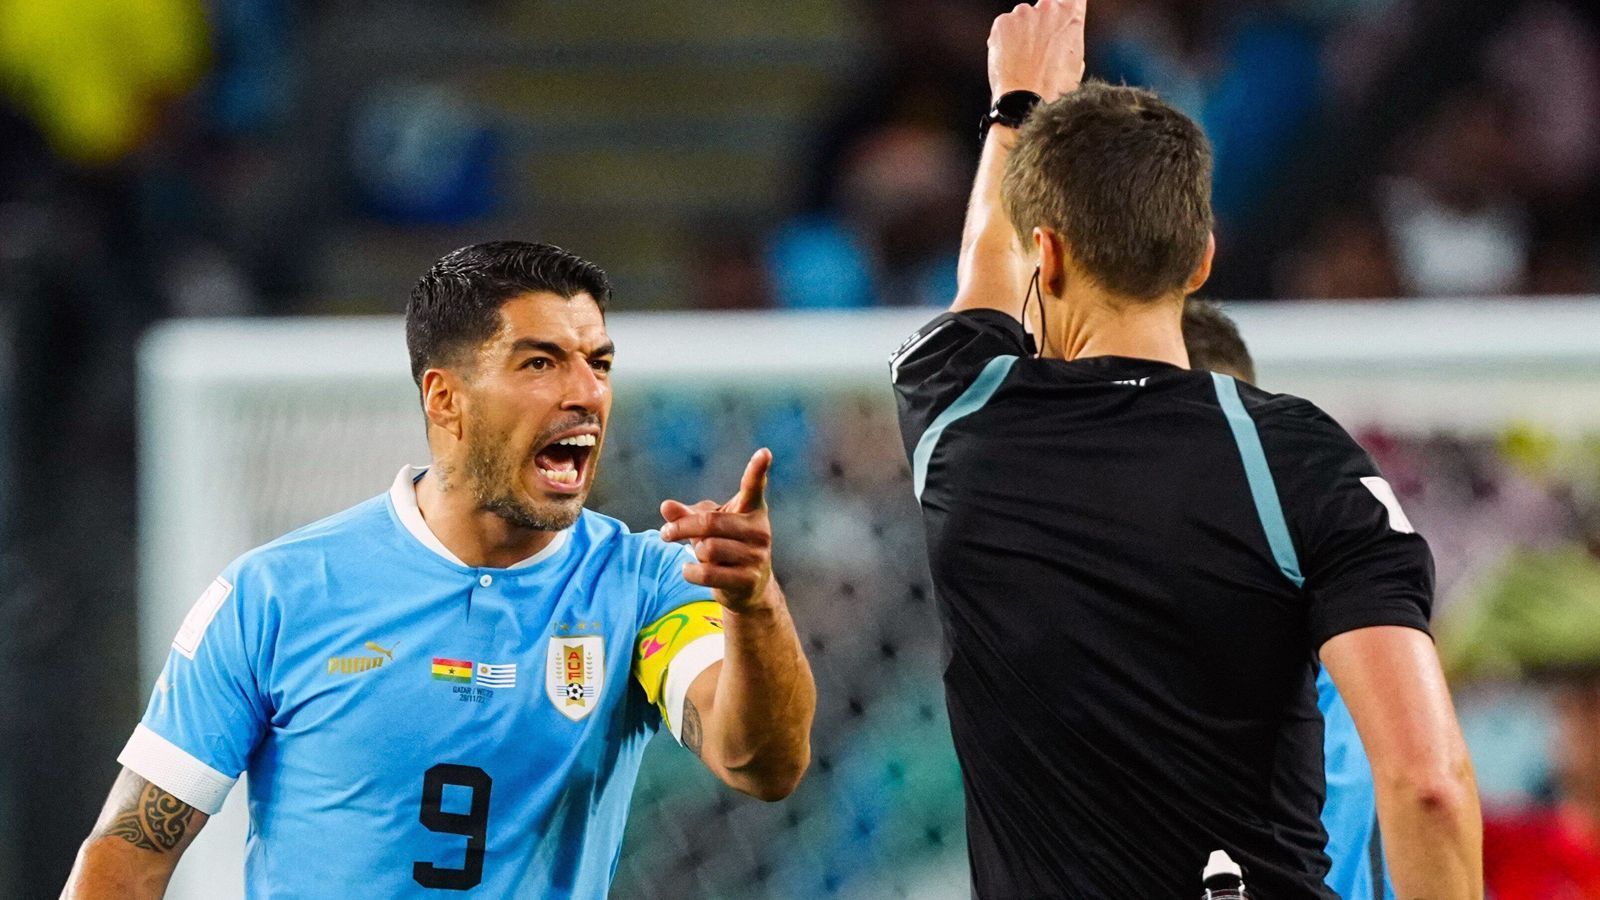 
                <strong>Uruguays Stars gehen auf Schiedsrichter Siebert los - Cavani zerstört VAR-Bildschirm</strong><br>
                Die uruguayische Nationalmannschaft gewann zwar am dritten und letzten Vorrunden-Spieltag bei der WM in Katar mit 2:0 gegen Ghana, dennoch reichte dieses Ergebnis nicht, weil im Parallelspiel Südkorea gegen Portugal mit 2:1 siegte. Letztlich fehlte der "Celeste" für das Erreichen des Achtelfinals ein einziges Tor. Nach dem Schlusspfiff spielten sich wilde Szenen ab - die Wut der Südamerikaner richtete sich vor allem gegen den deutschen Schiedsrichter Daniel Siebert, wegen dessen Entscheidungen bei strittigen Elfmeter-Situationen.
              